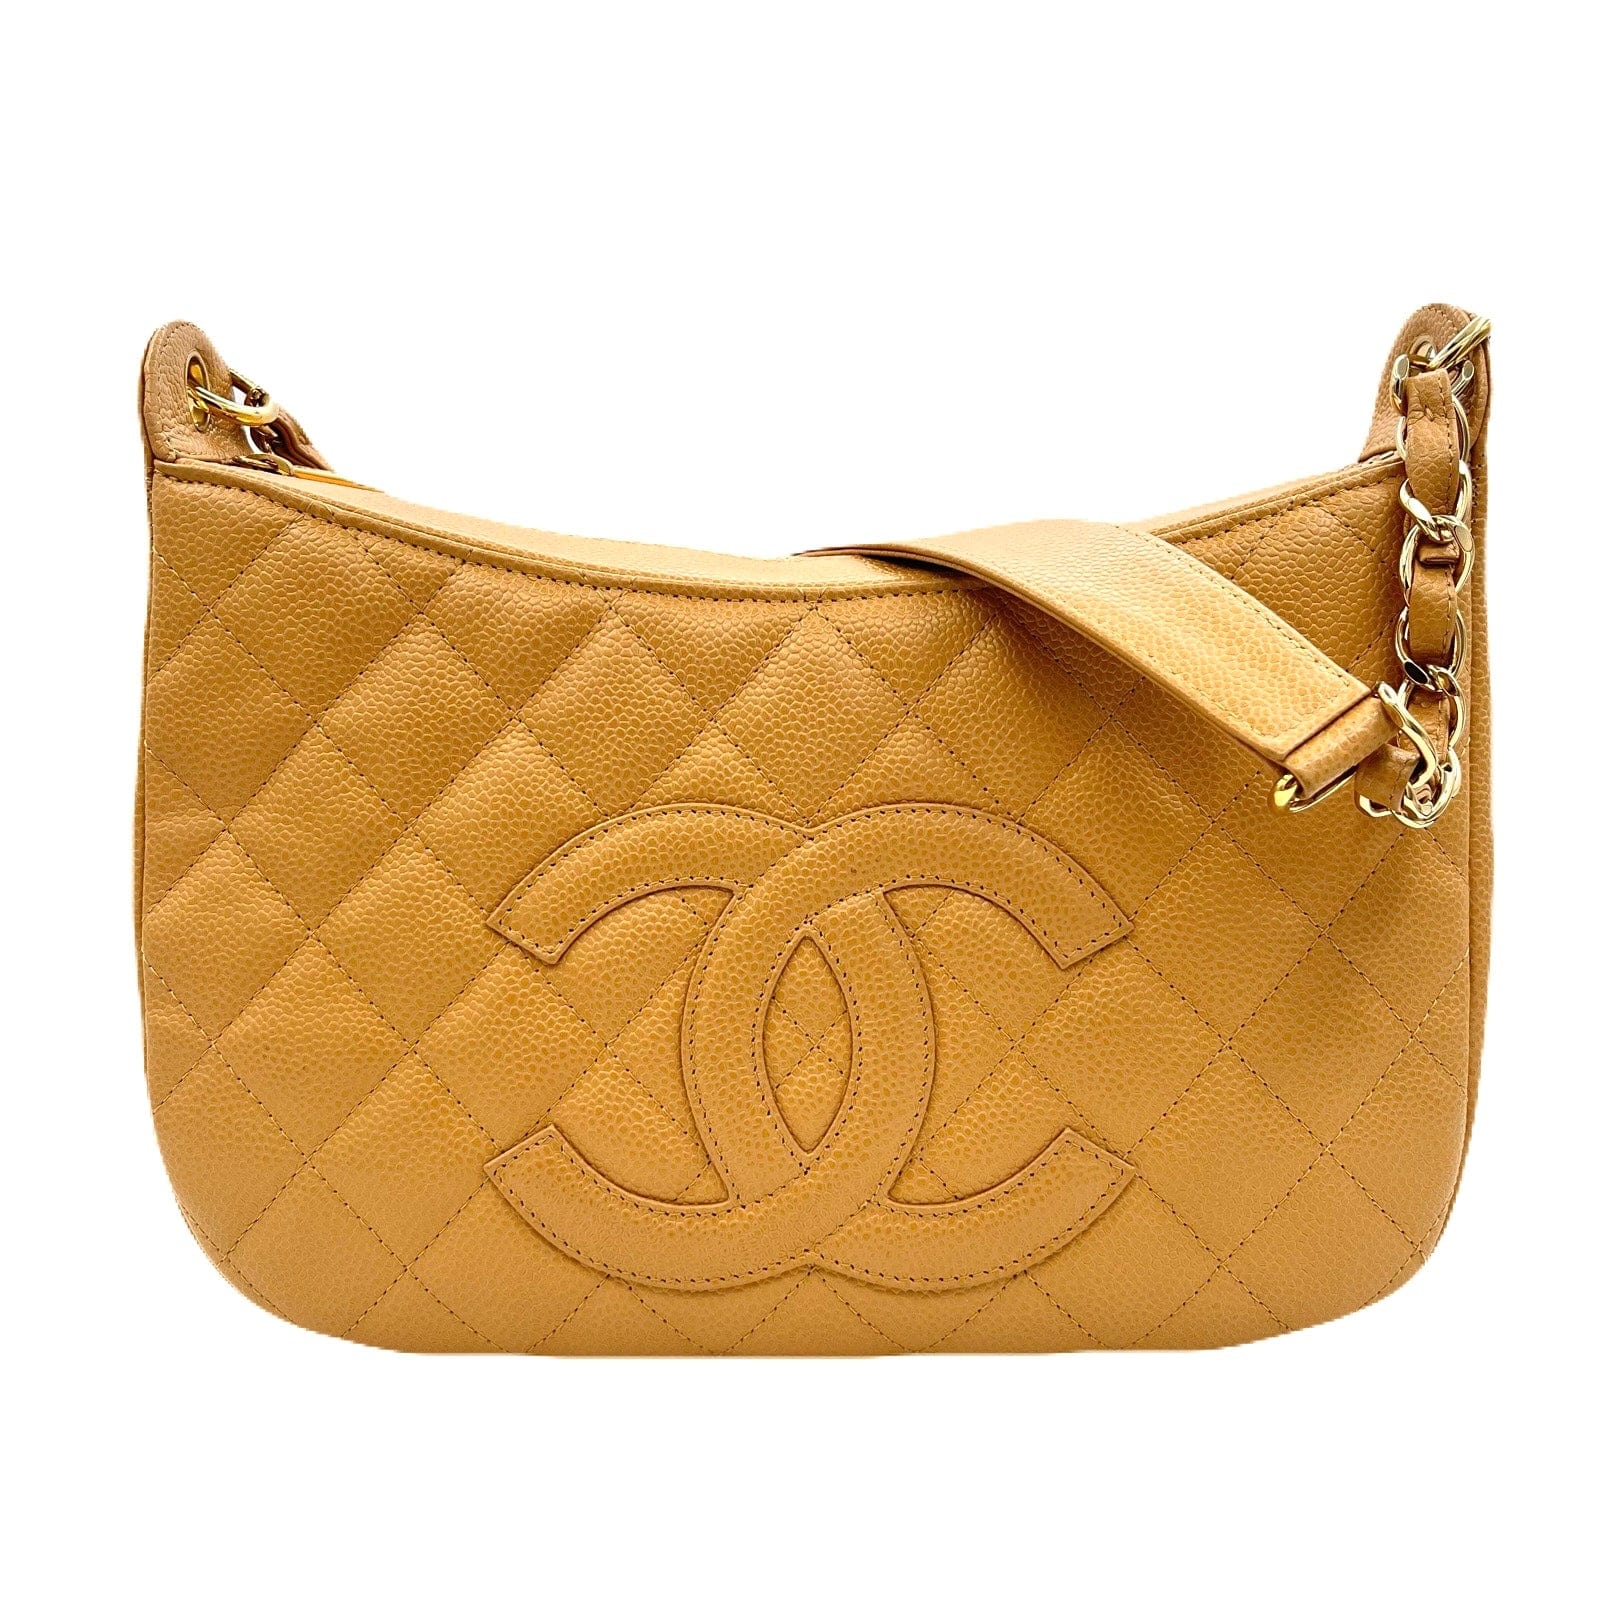 Chanel CHANEL VINTAGE HALF MOON ONE SHOULDER BAG BEIGE CAVIAR SKIN 90220654